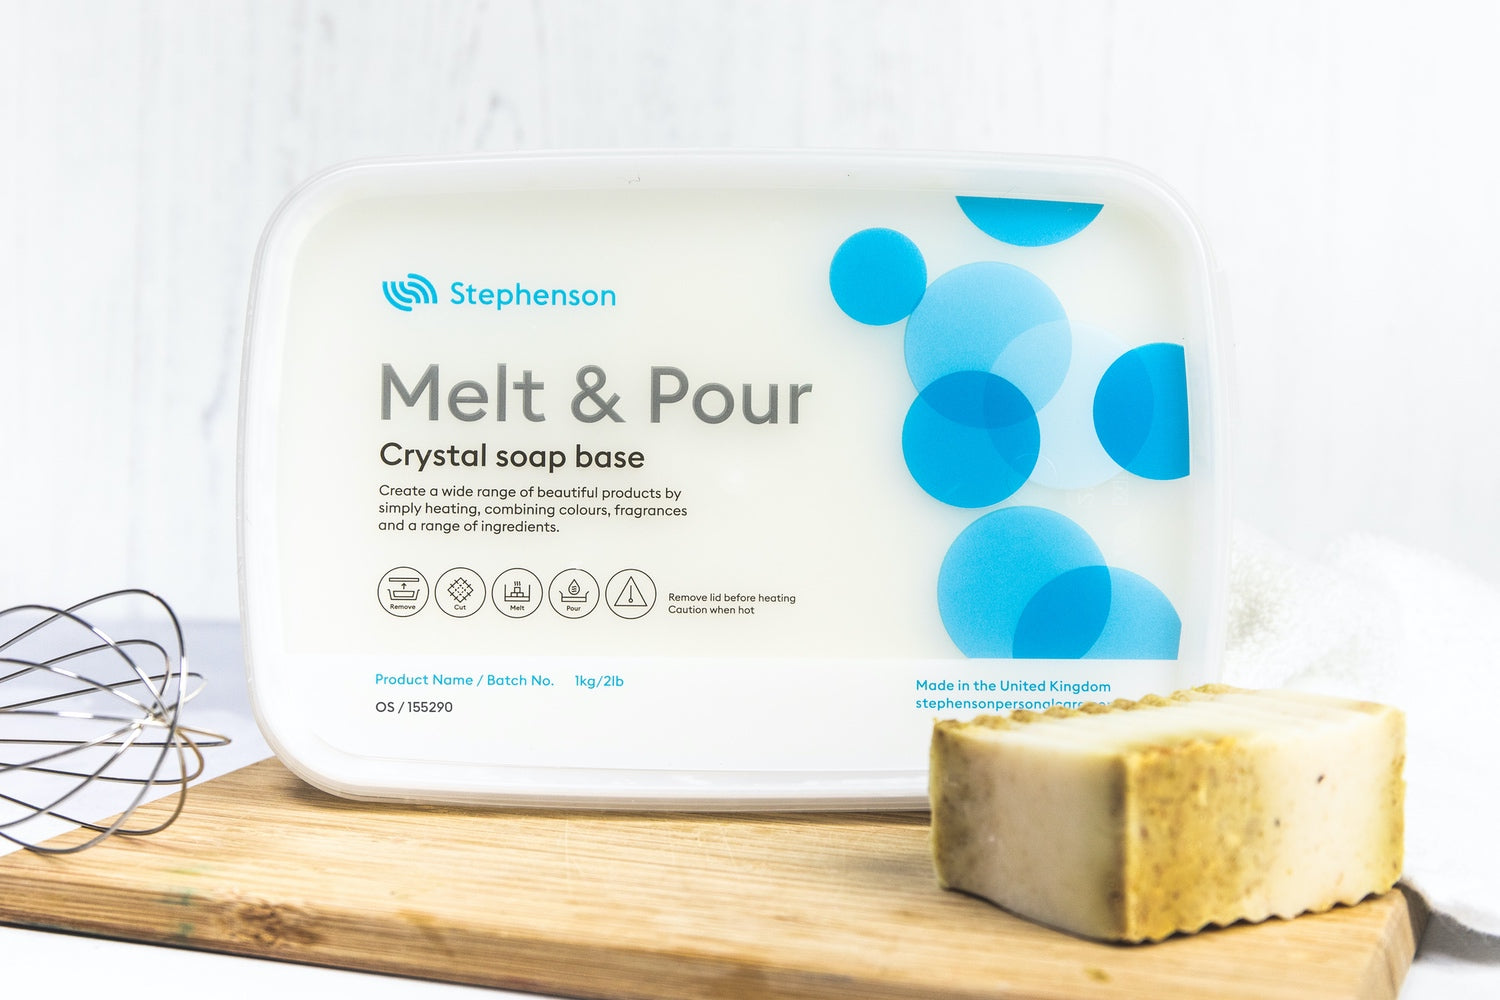  Saint Terra - Oatmeal Melt & Pour Soap Base, 2 Pounds : Arts,  Crafts & Sewing